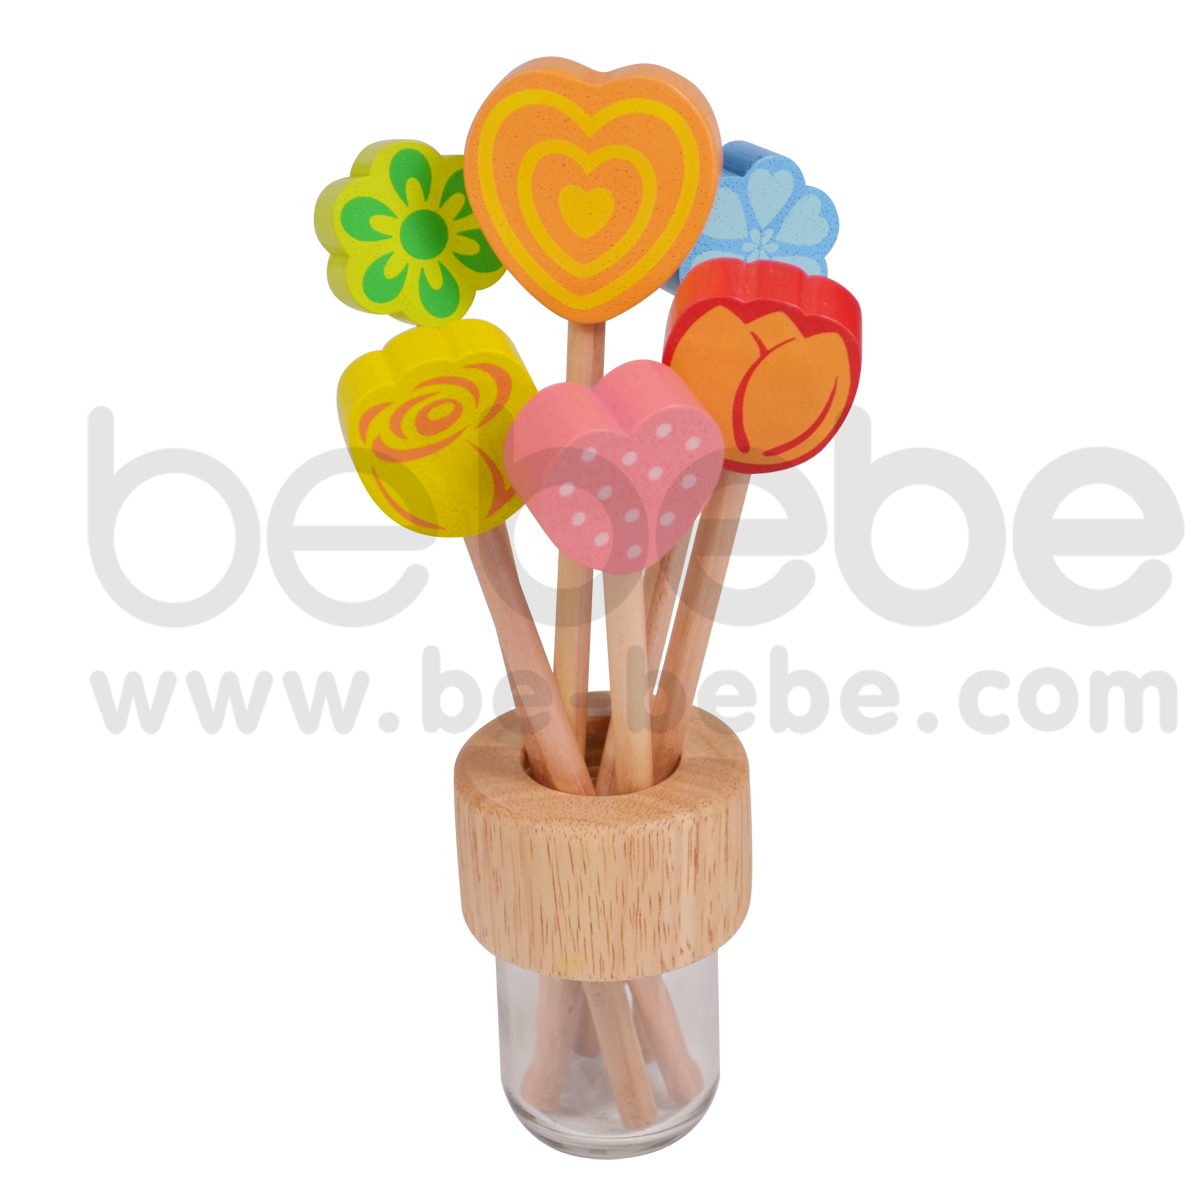 bebebe : Pencil-S-Spot Heart/Green